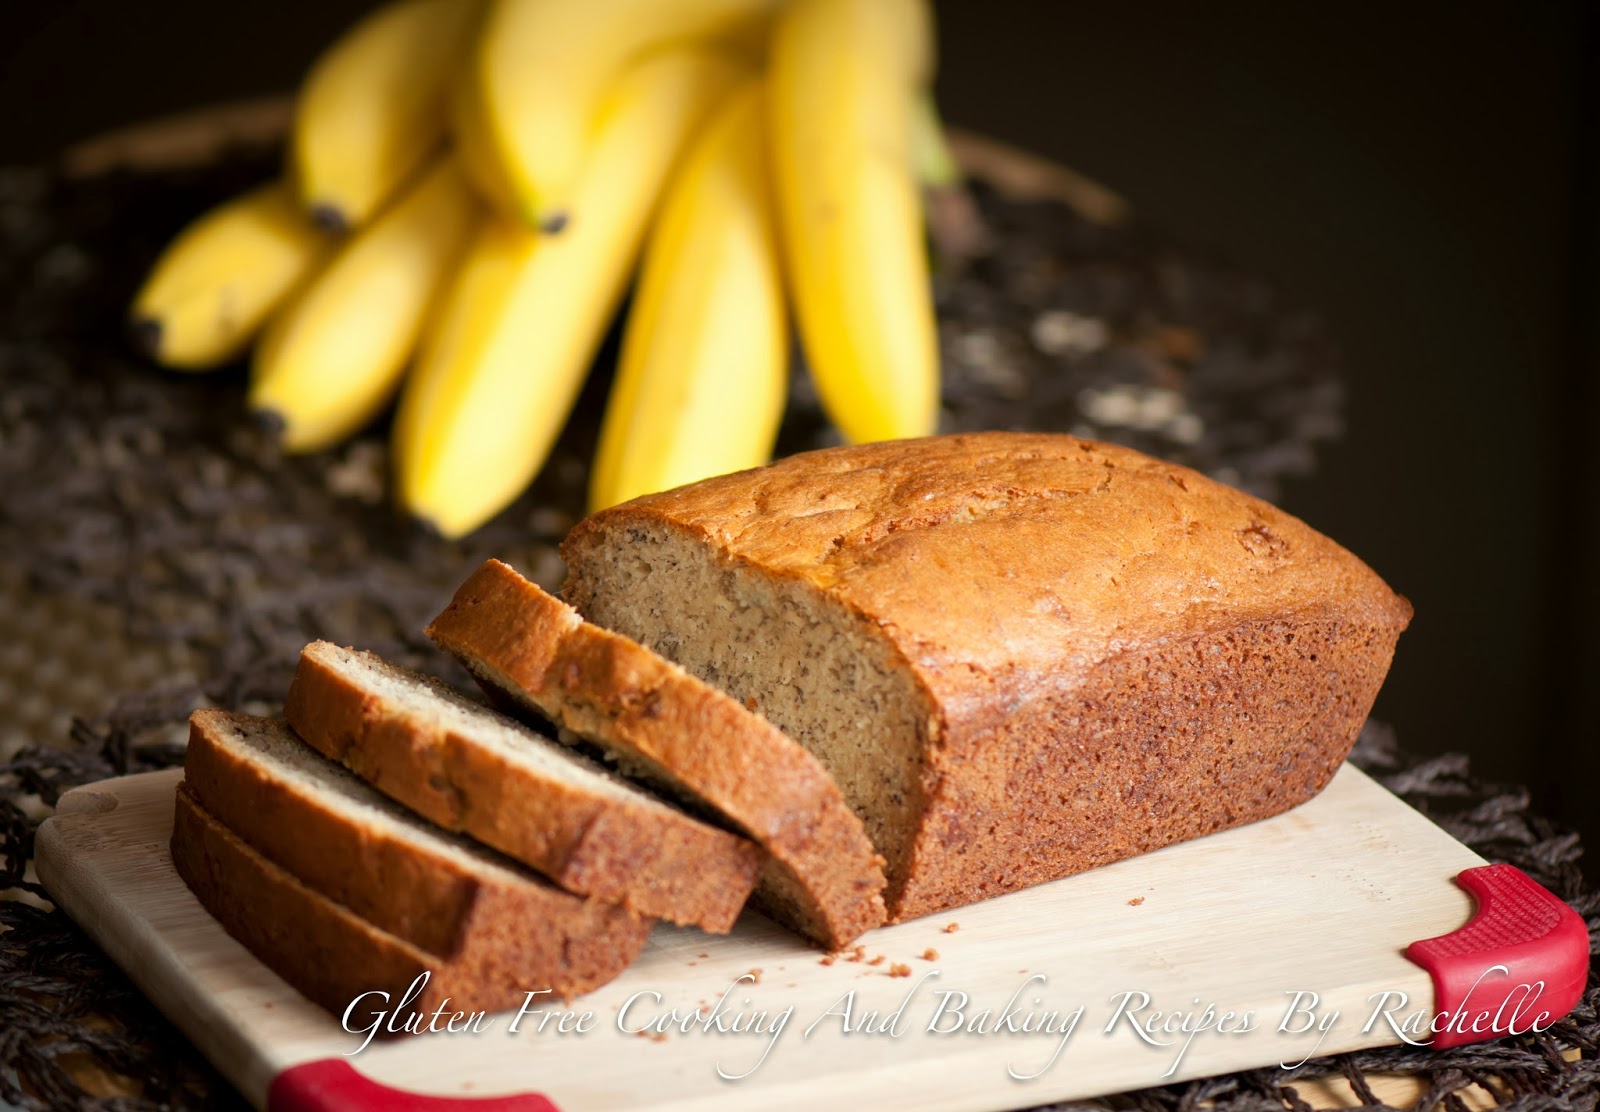 Gluten Free Baking By Rachelle: Gluten-free Banana Bread